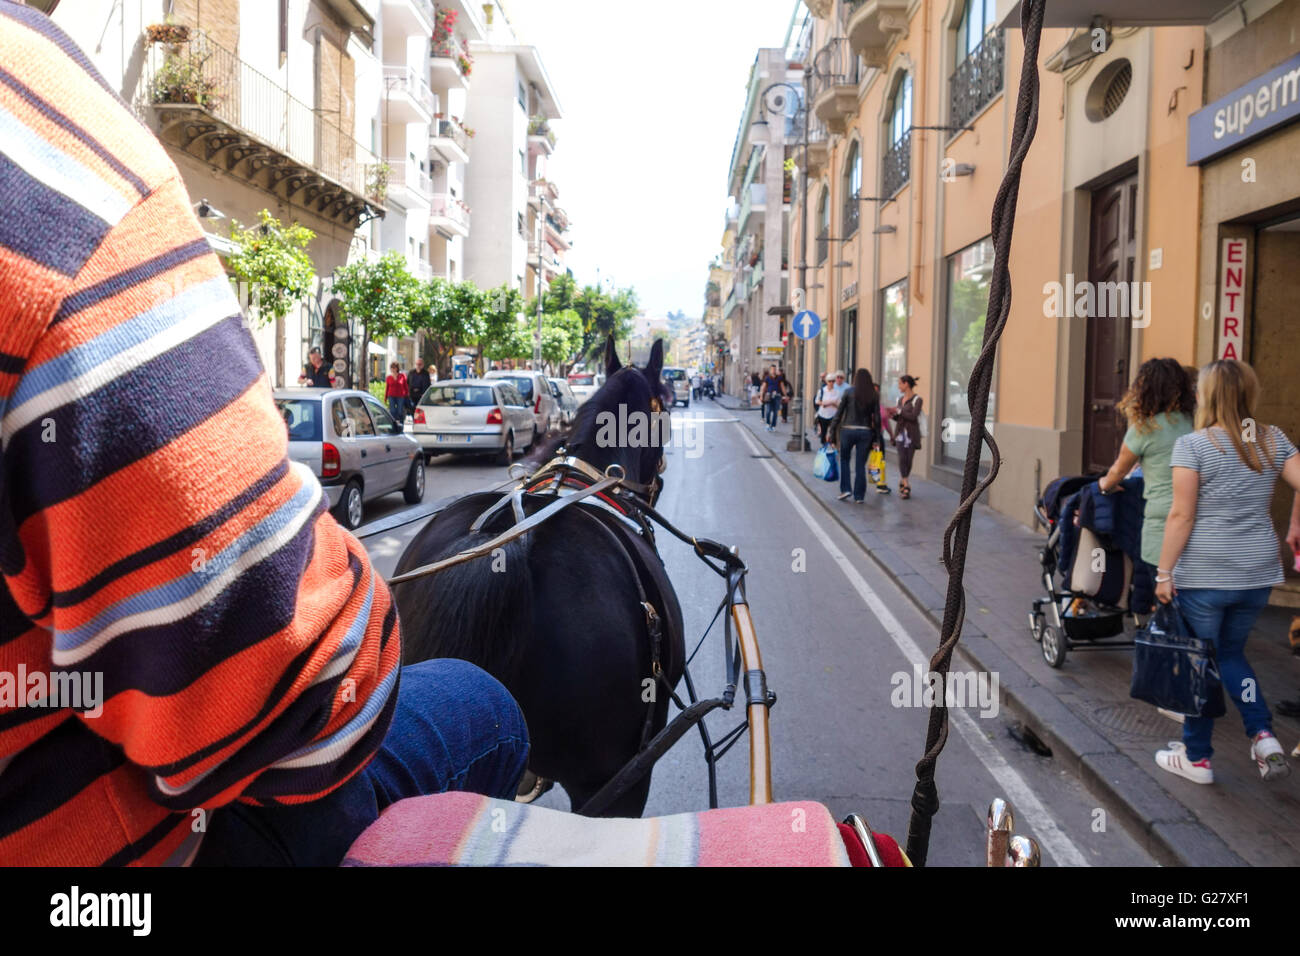 Ein Blick auf eine Seitenstraße in Sorrent von einer Pferdekutsche touristische Reise Stockfoto